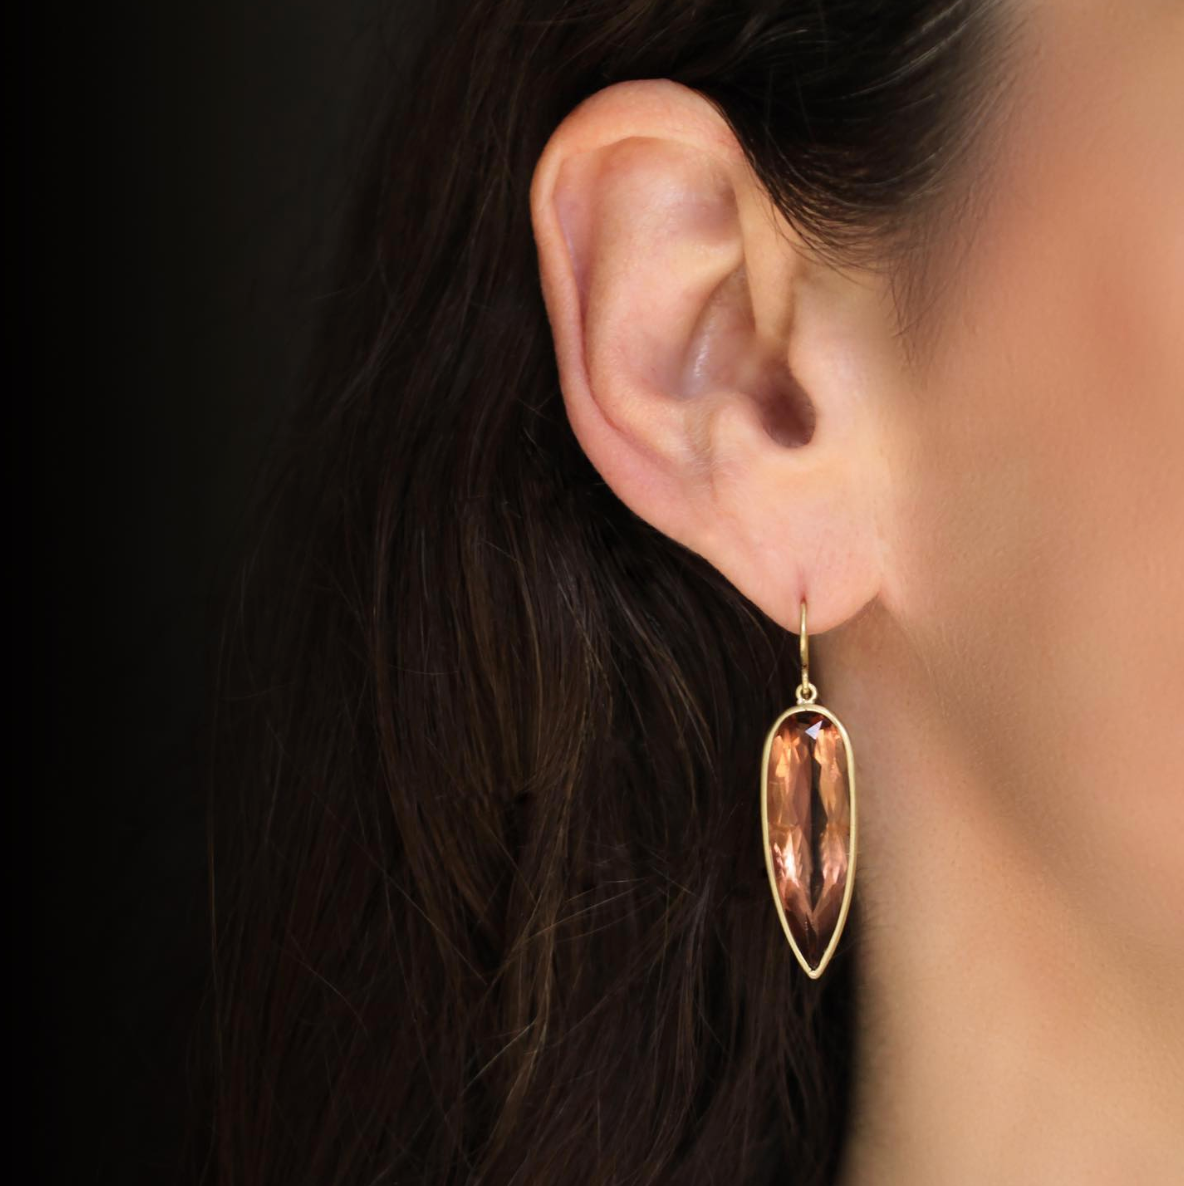 Vincy V-Shape Hoop Earrings 18K Gold/Silver – Oblession